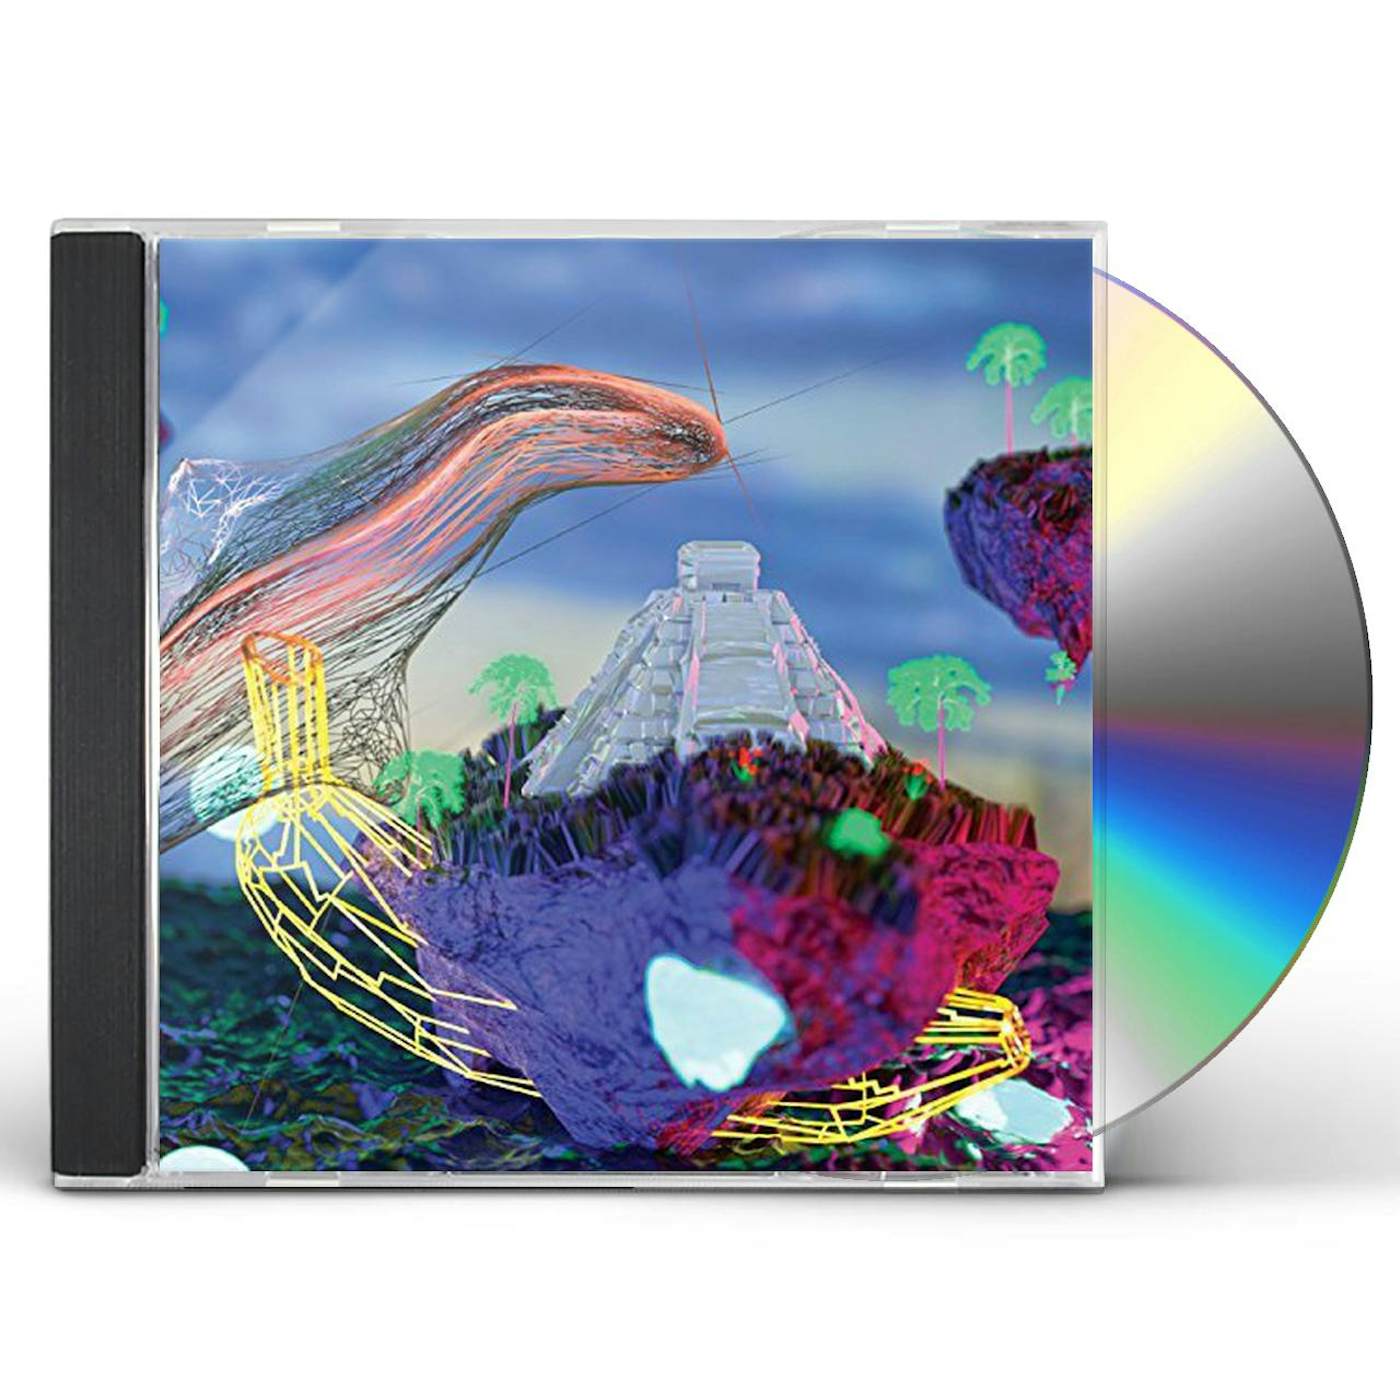 Ultrademon PIRATE UTOPIAS CD